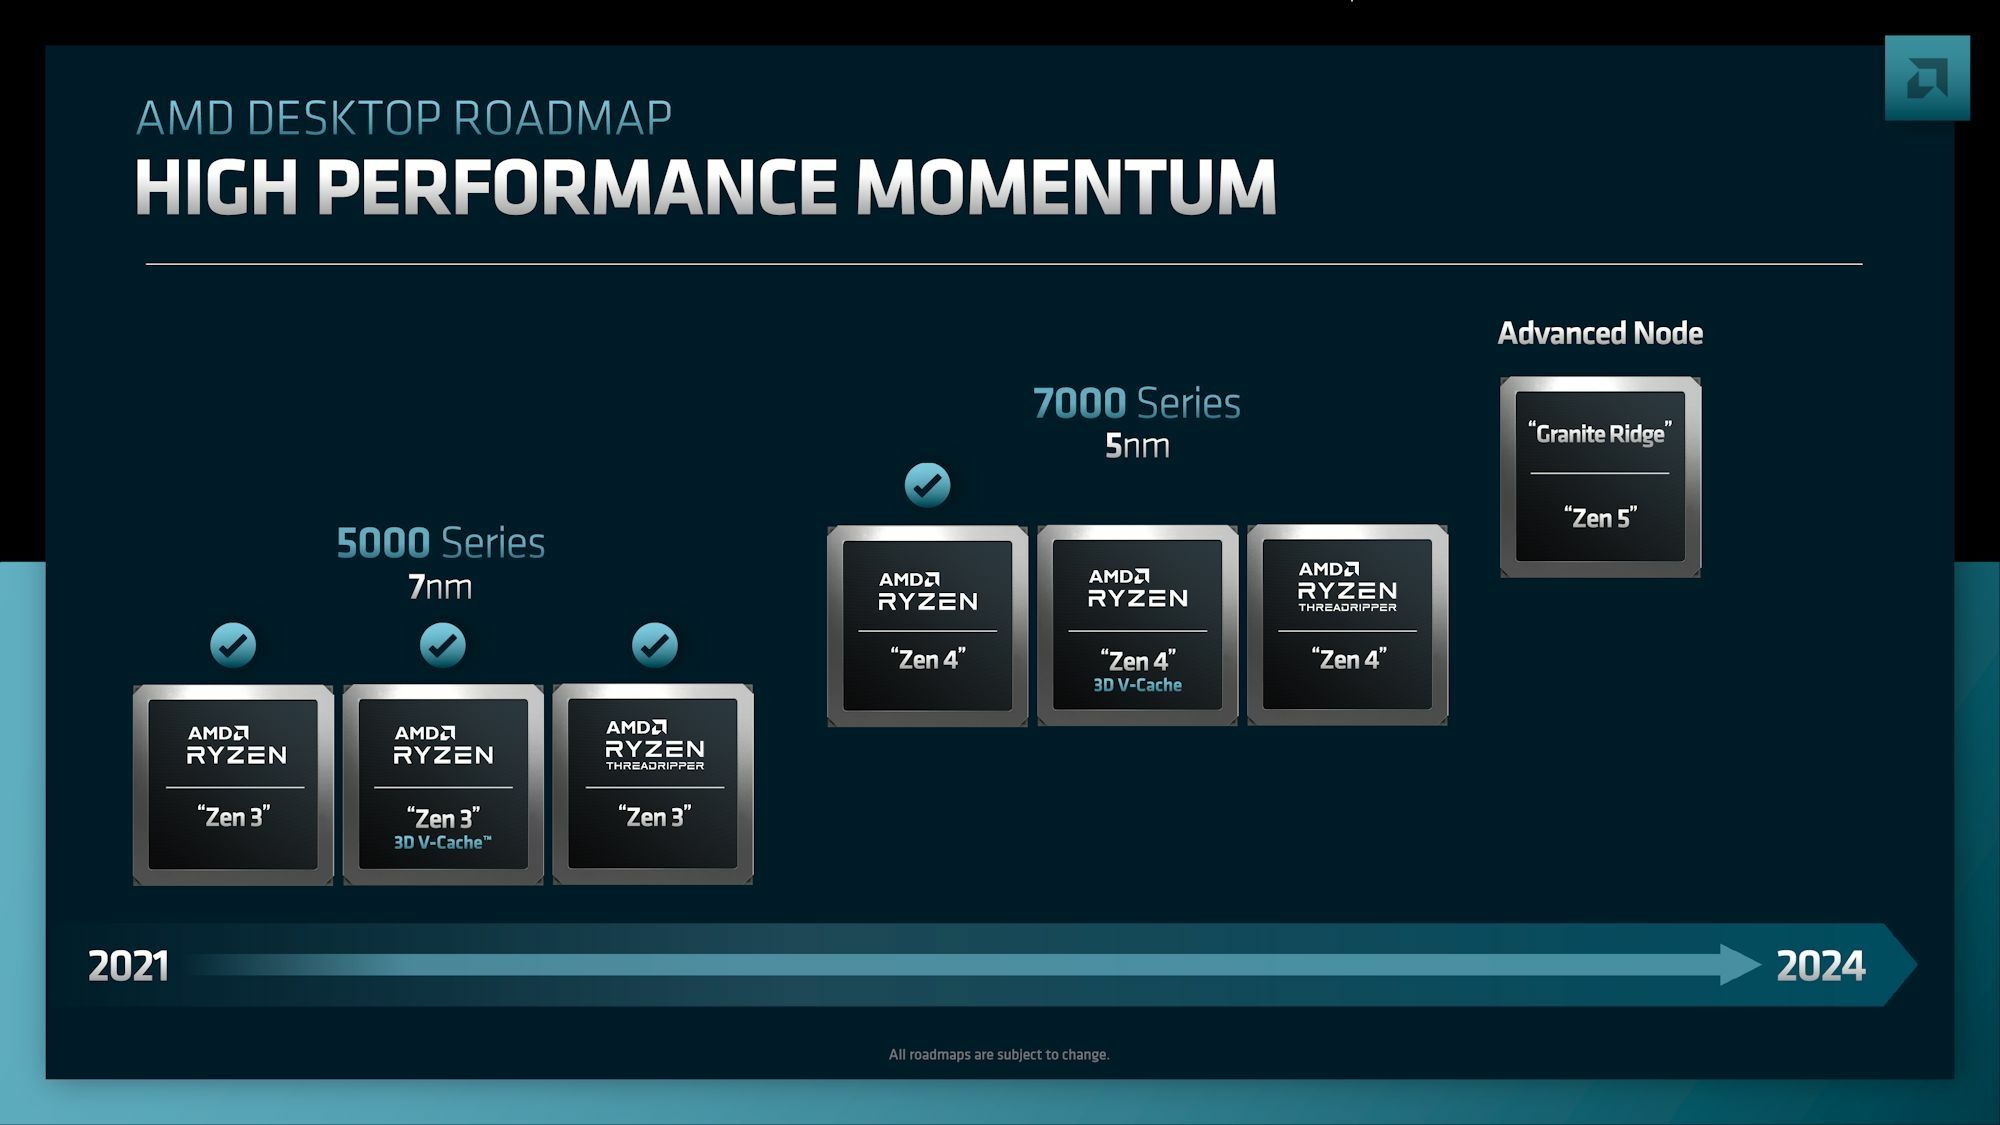 AMD Ryzen roadmap